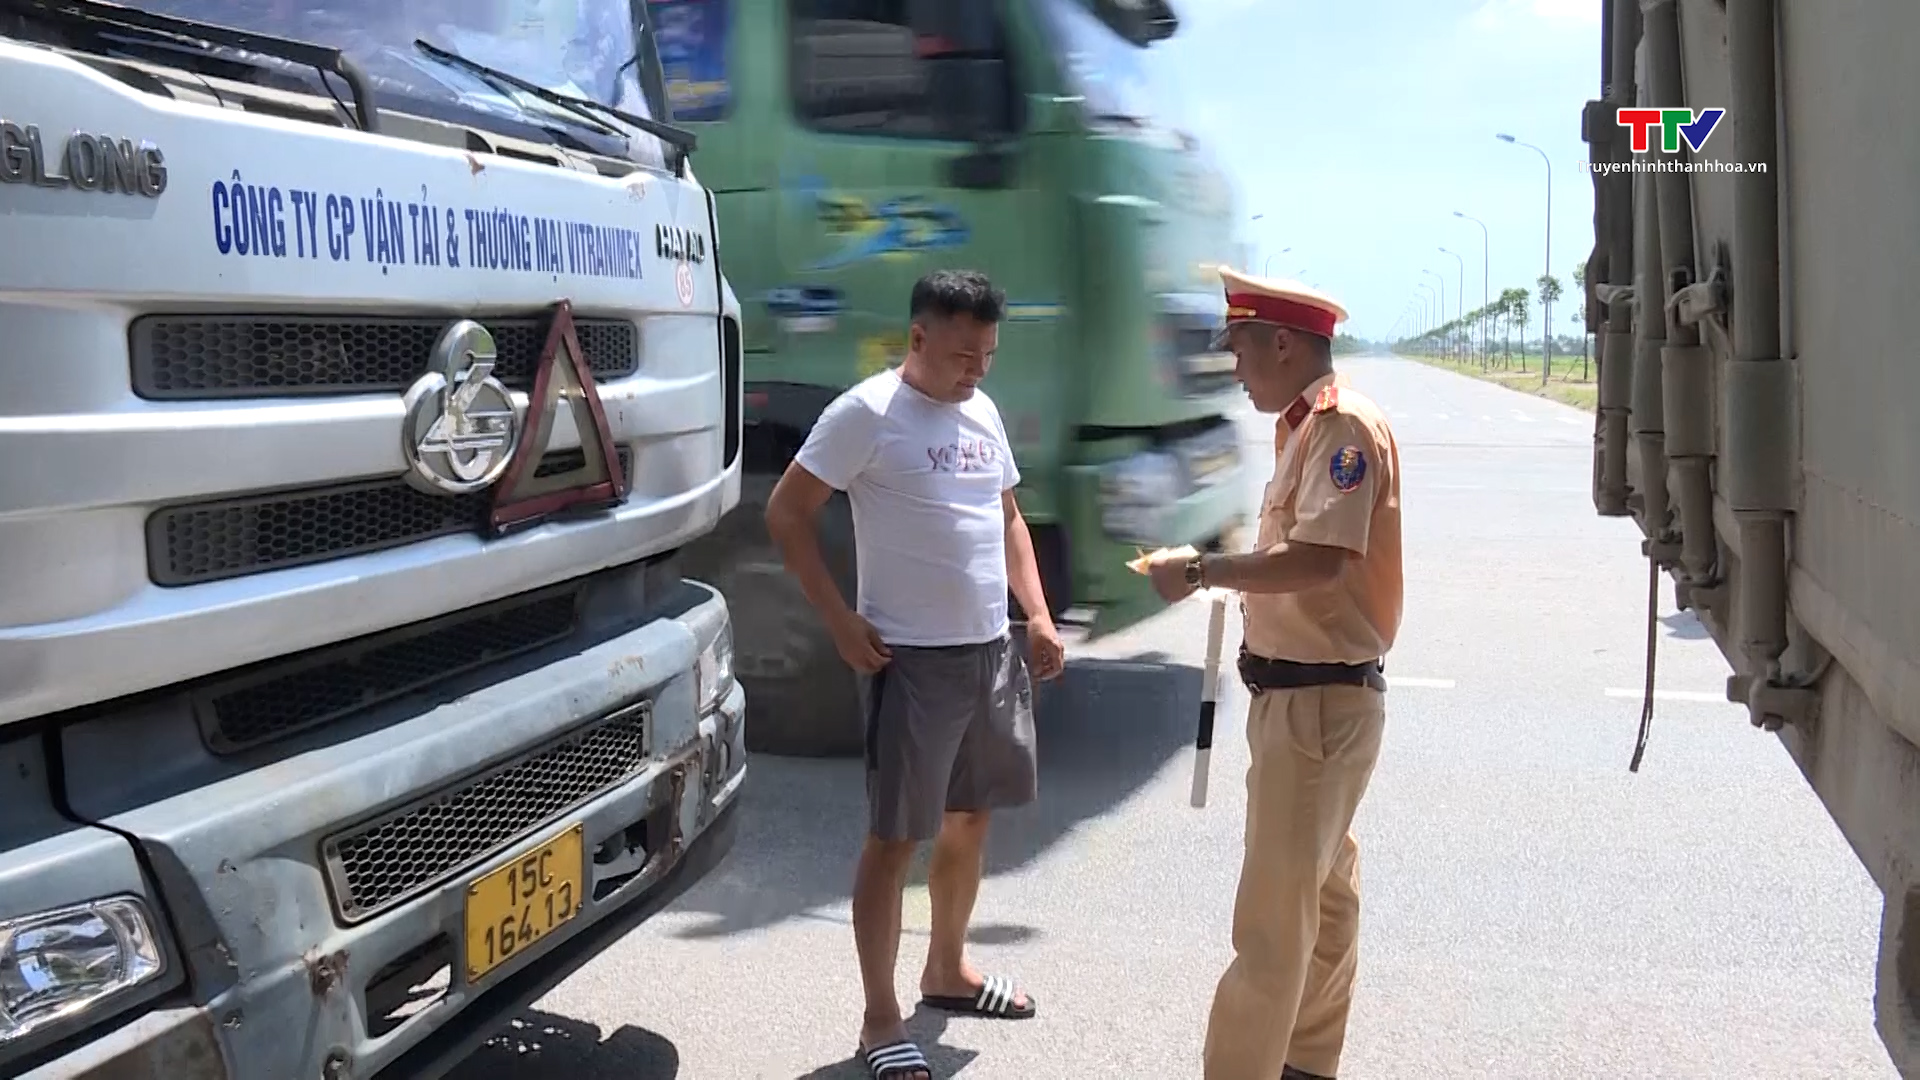 Cảnh sát giao thông Thanh Hoá: lập biên bản 282 xe khách và xe container vi phạm giao thông sau 10 ngày ra quân - Ảnh 3.